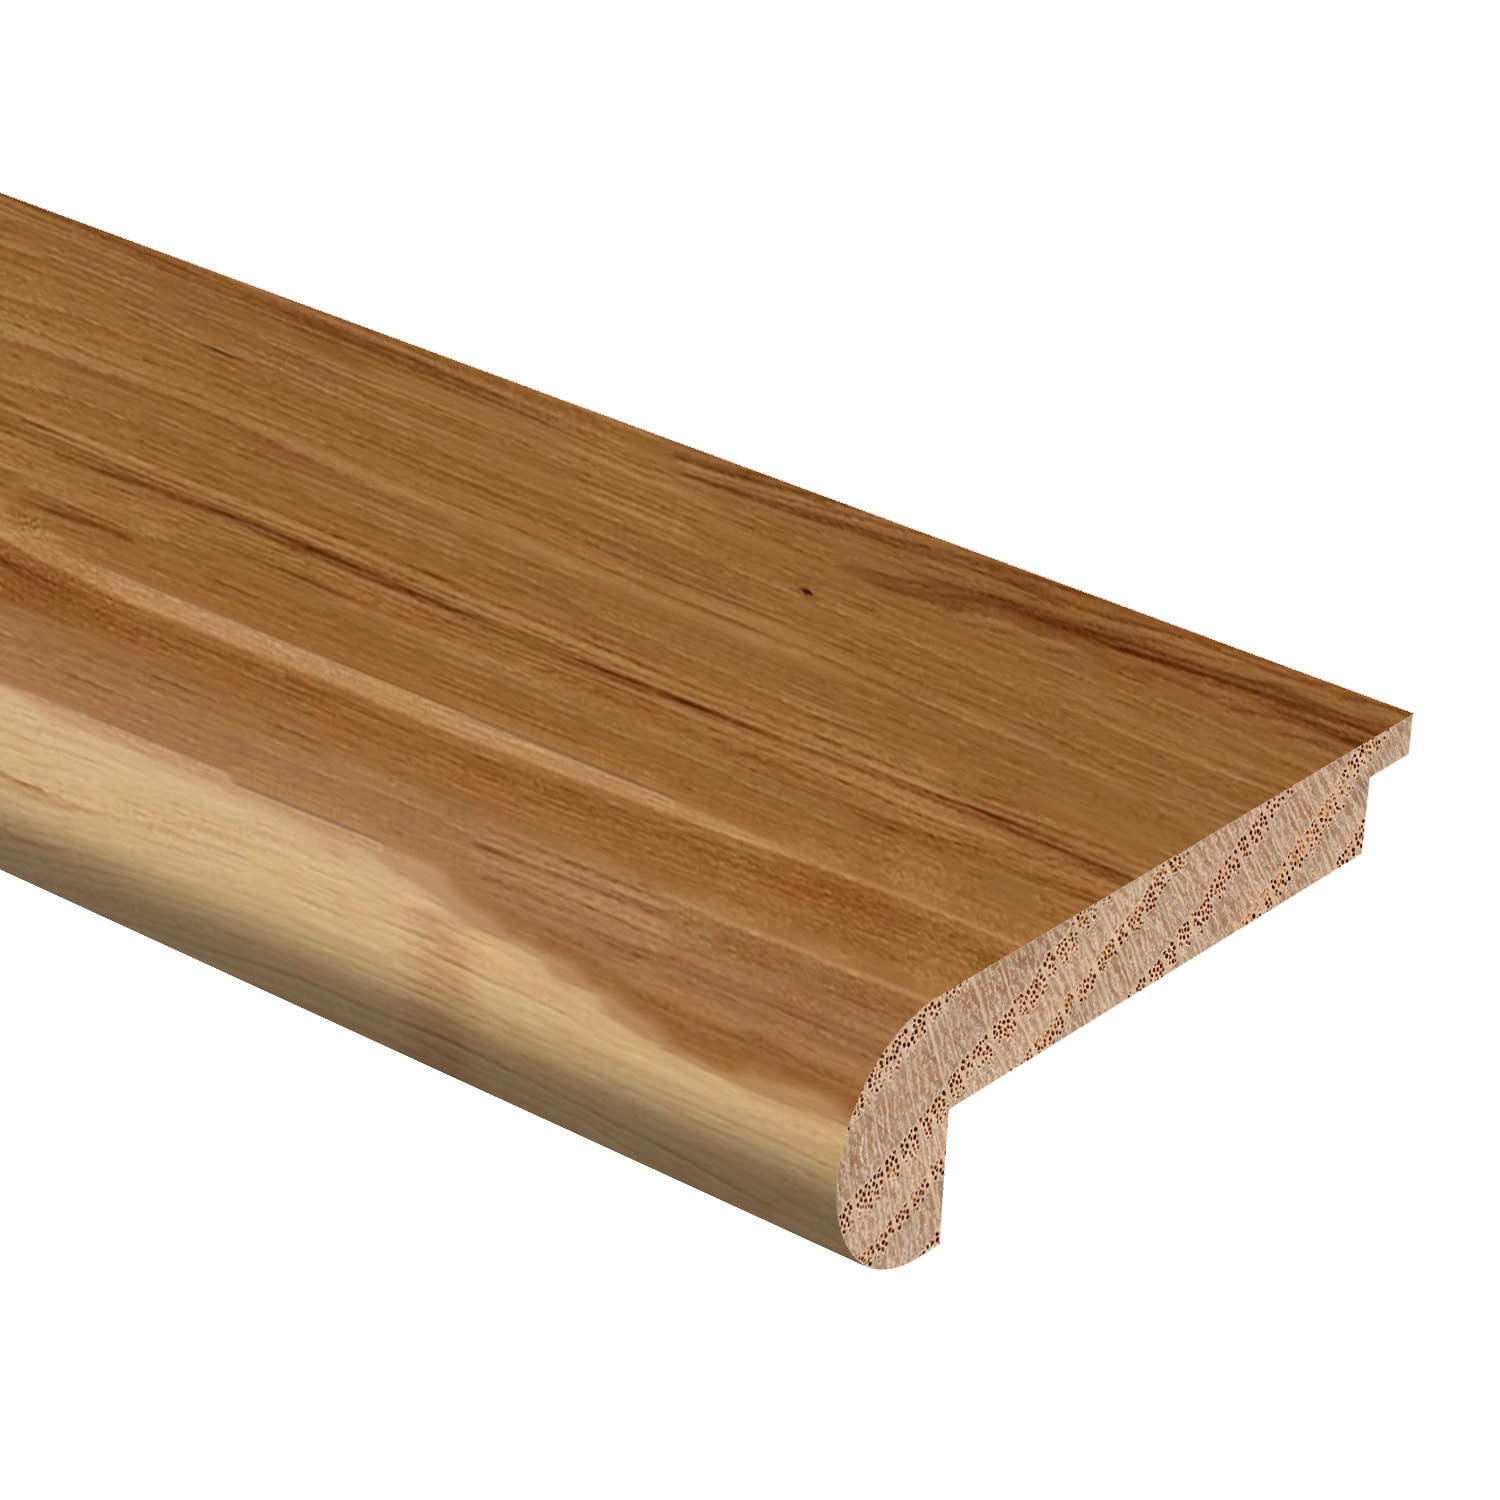 Wood Stair Nosing At Com, Bullnose Hardwood Floor Edging